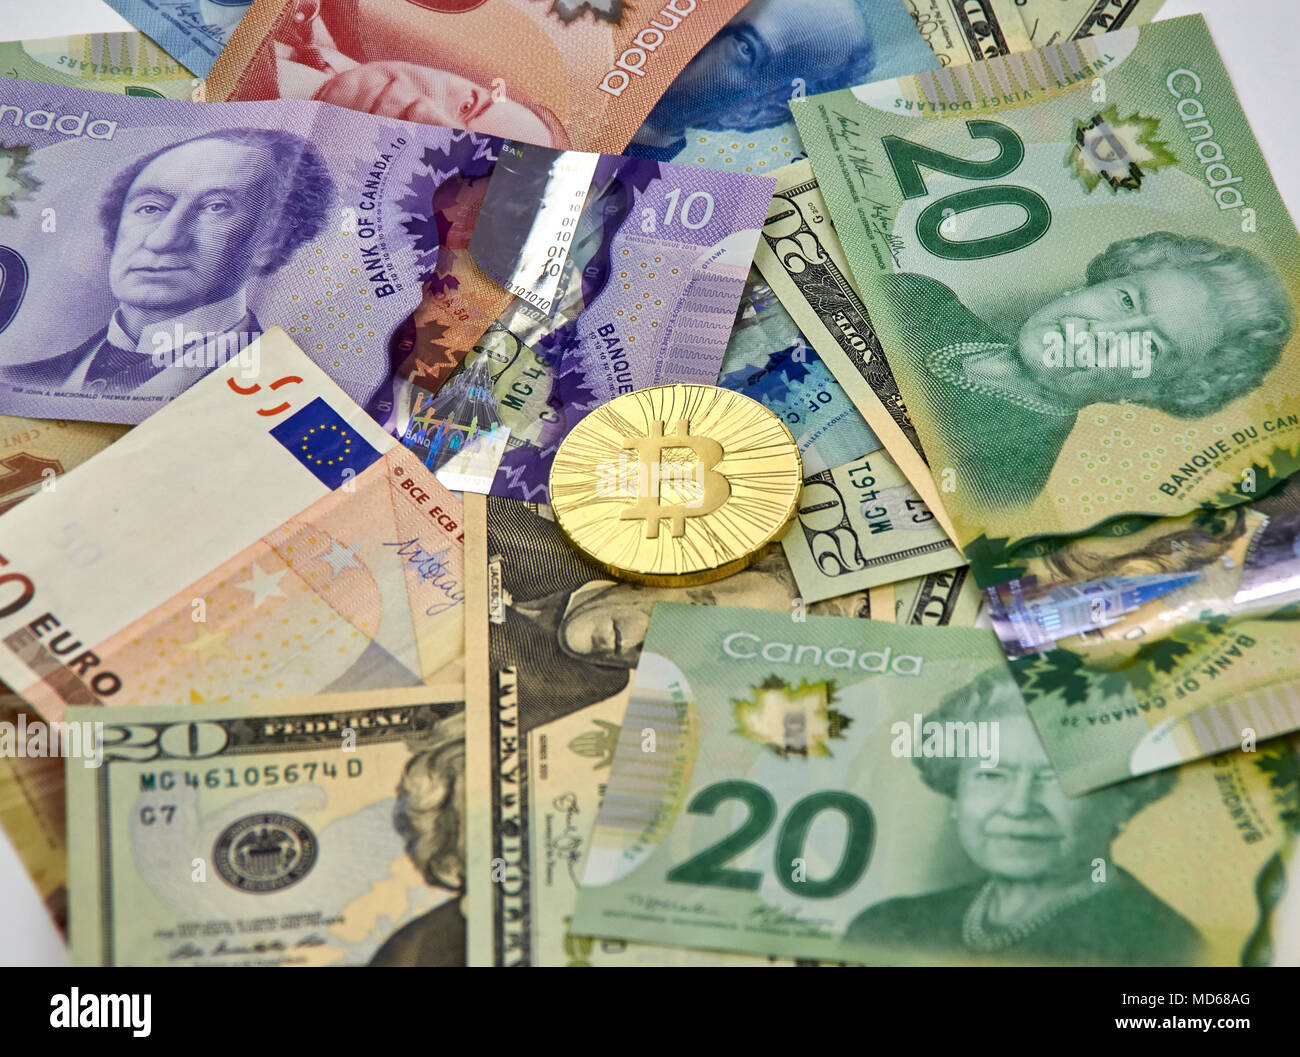 MONTREAL, KANADA - 10. MÄRZ 2018: Bitcoin cryptocurrency gold coin und Logo auf Euro, US-Dollar, kanadische Dollar Banknoten. Stockfoto